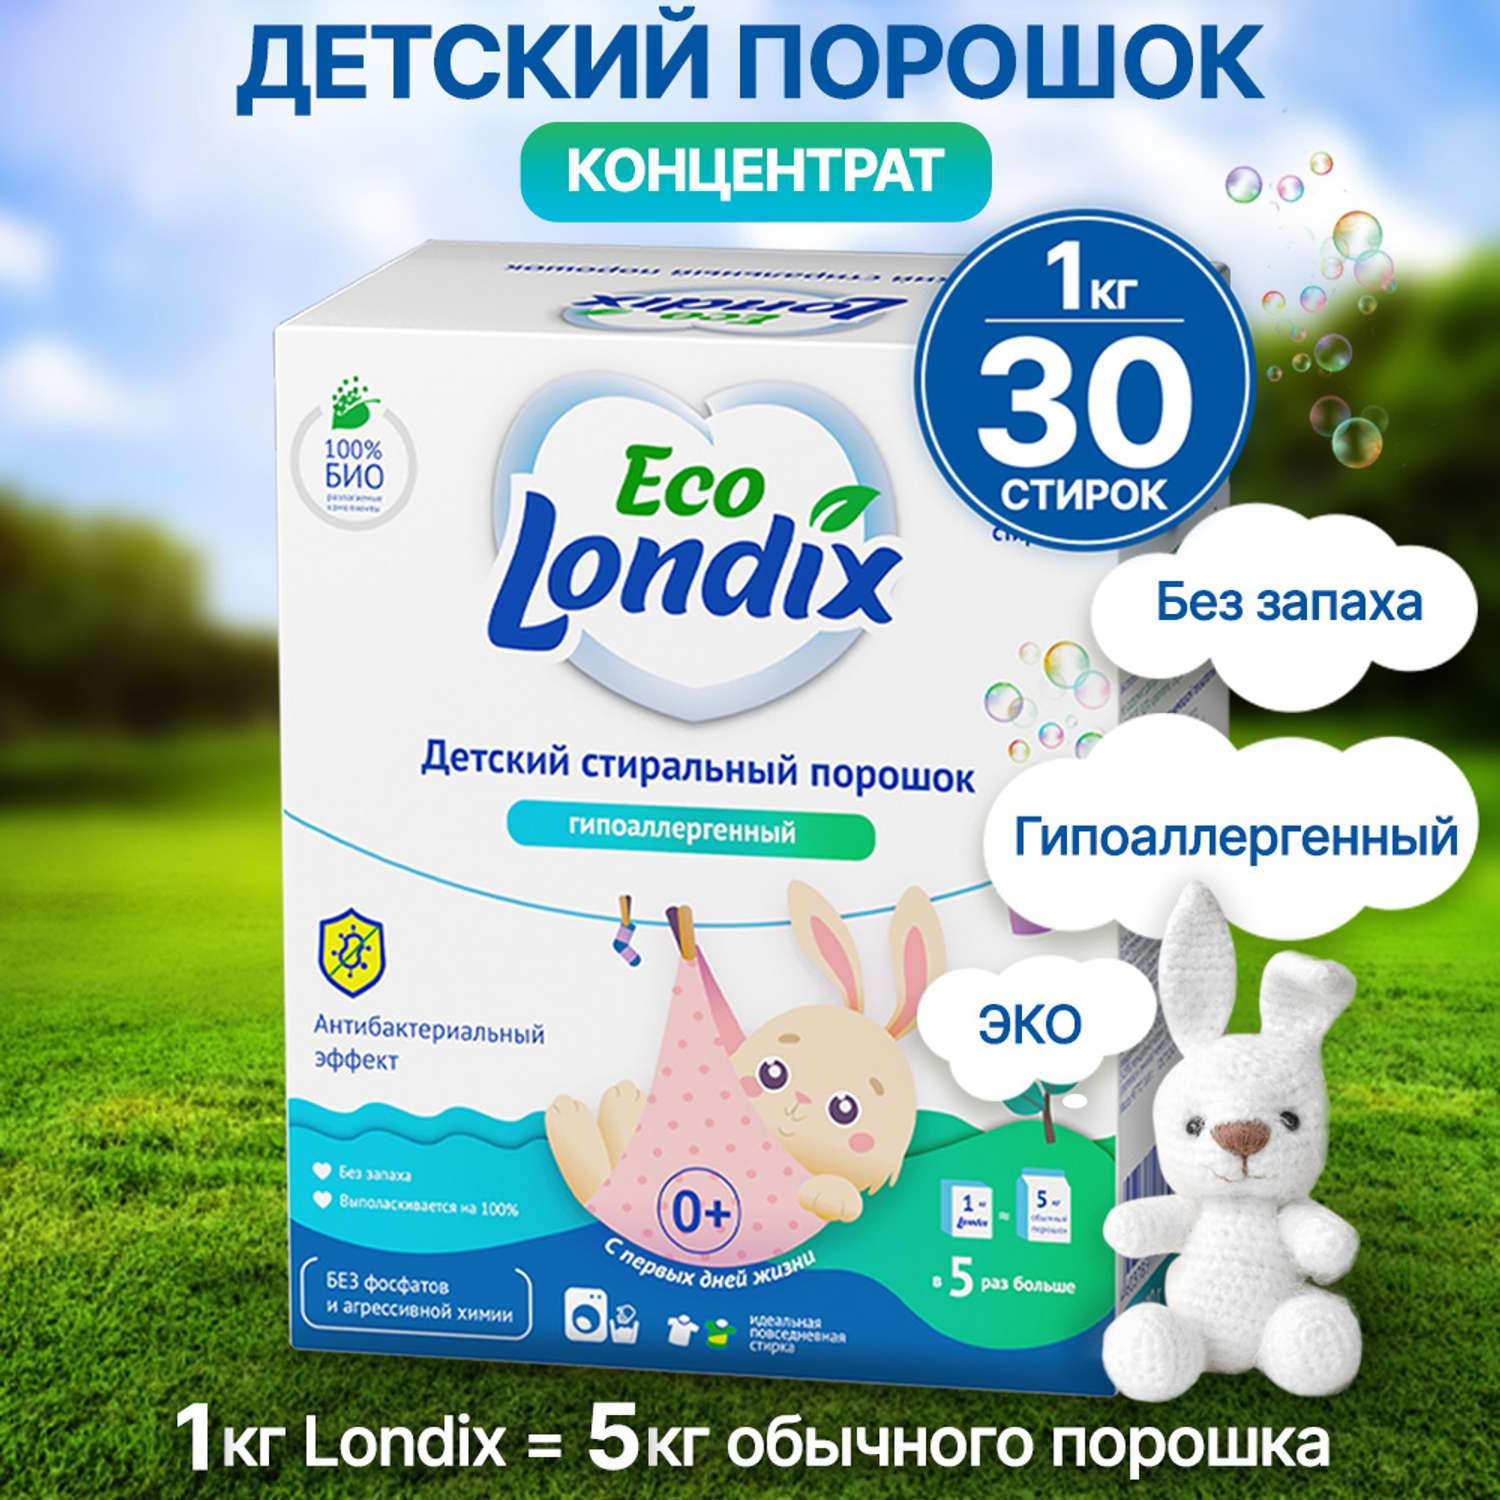 Детский стиральный порошок Londix гипоаллергенный без запаха концентрат 30 стирок (1 кг) - фото 1